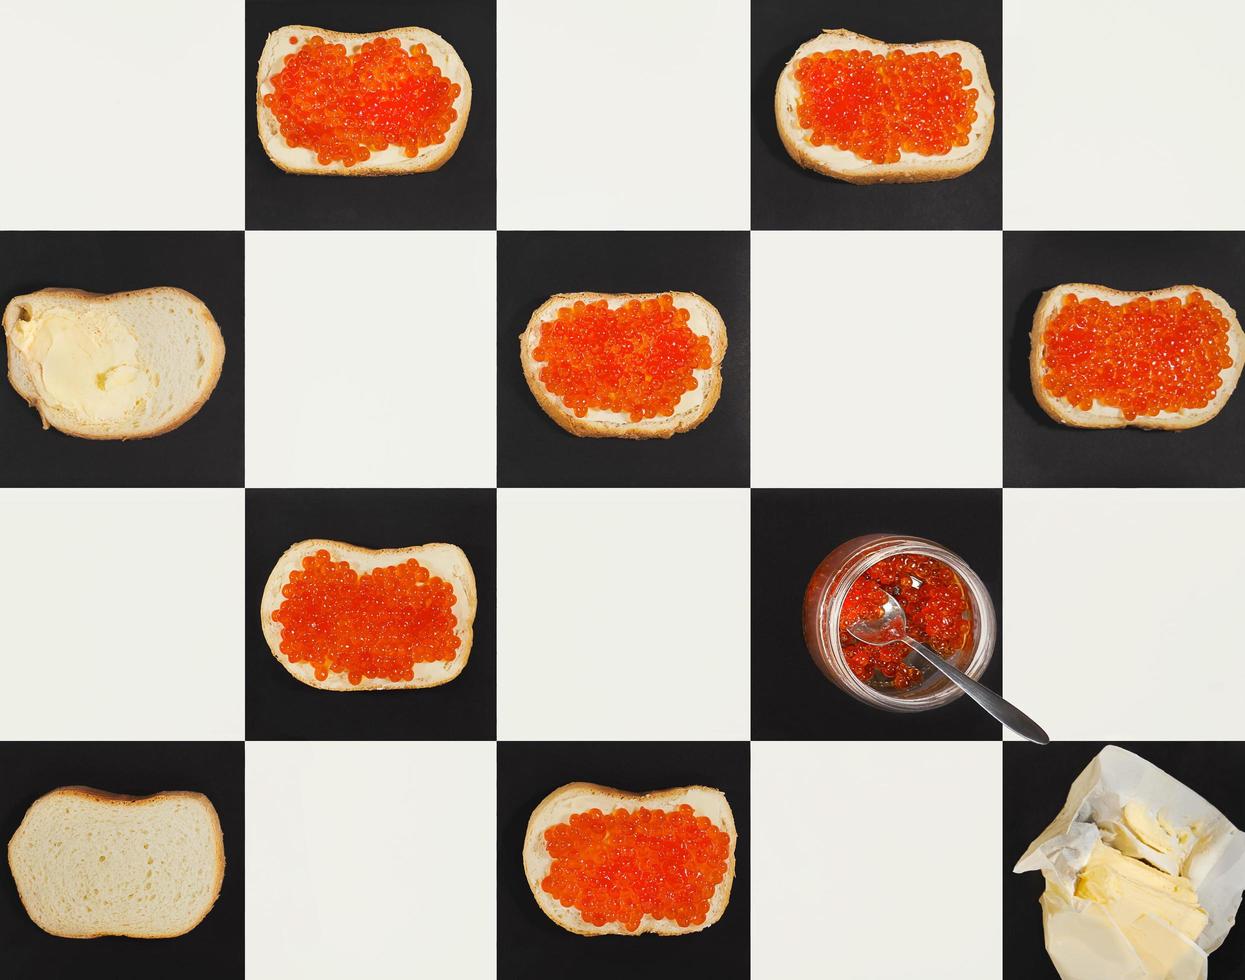 laxkaviar kanapéer, smör, röd kaviar i en burk som bildar ett mönster på schackbrädet, ovanifrån foto